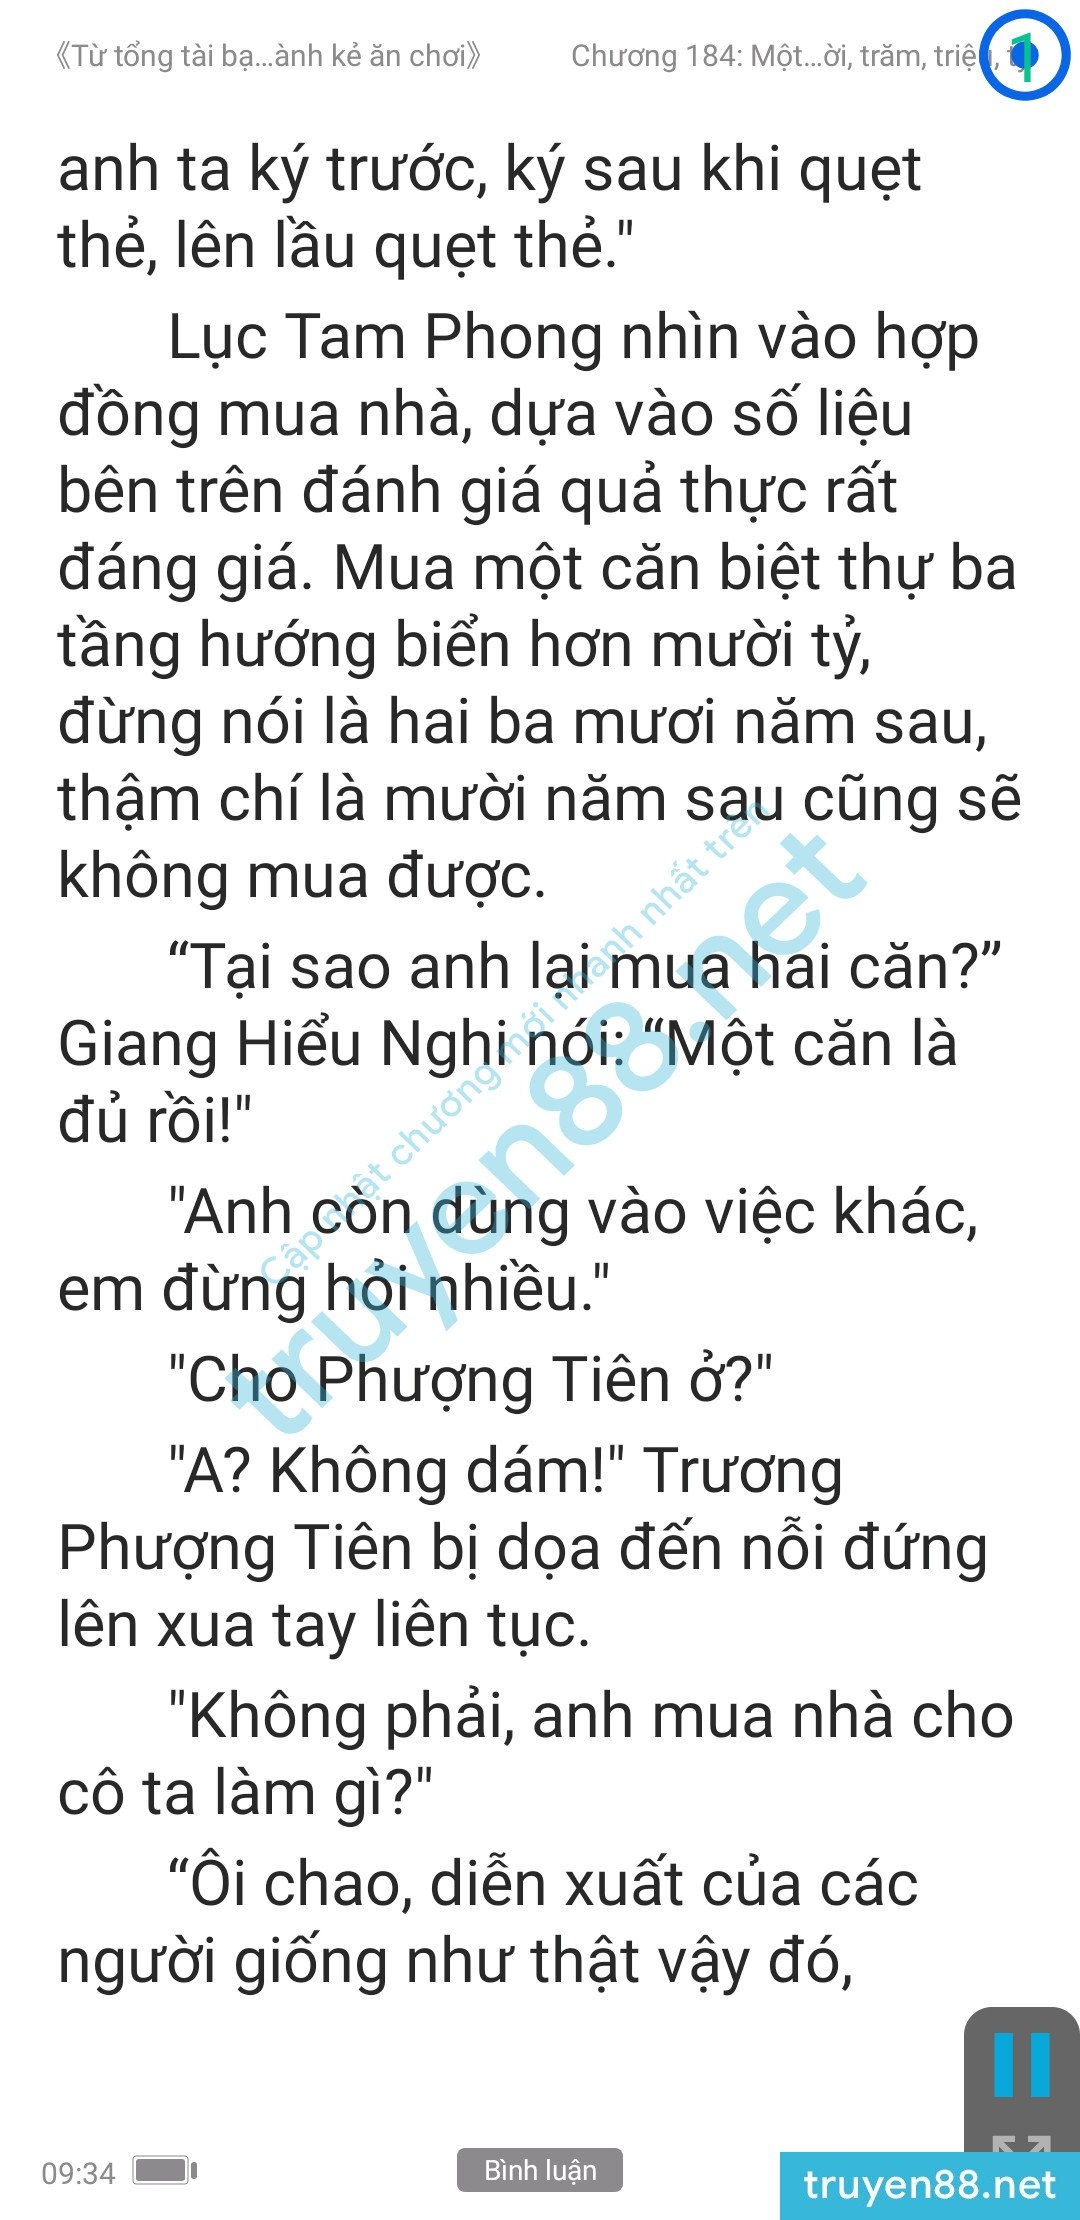 ke-an-choi-bien-tong-tai-184-0